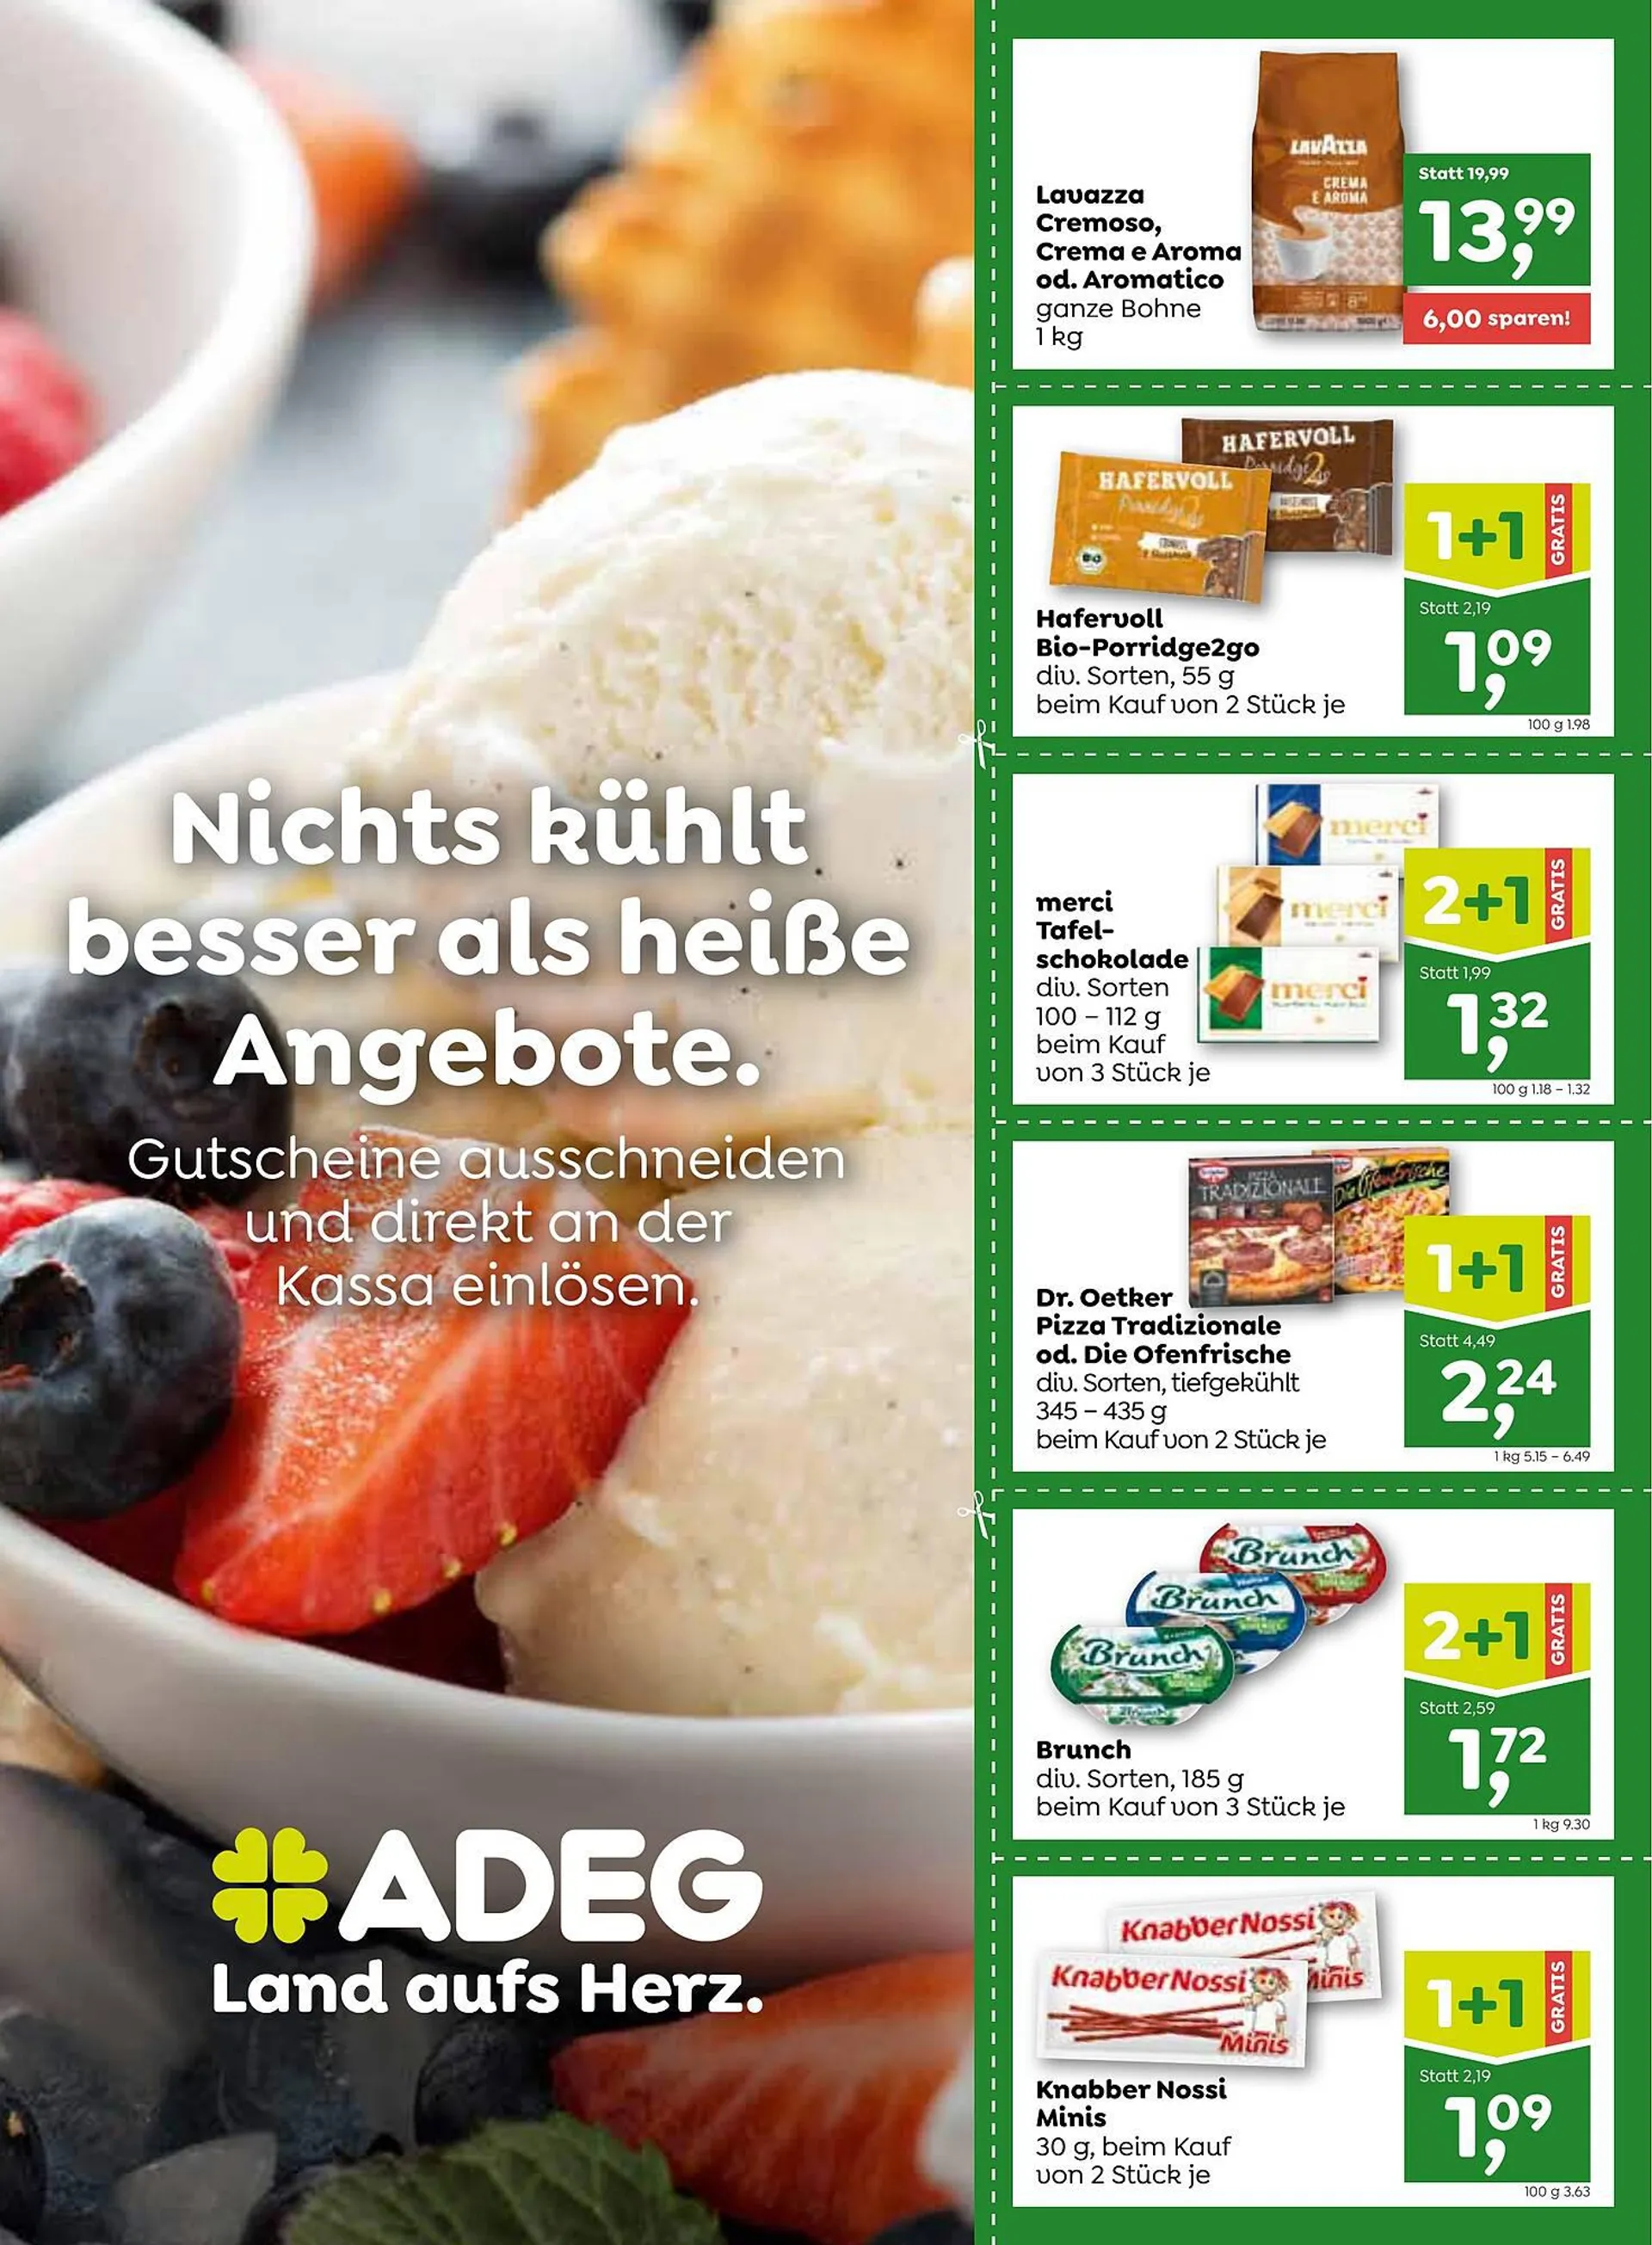 ADEG Flugblatt - 1